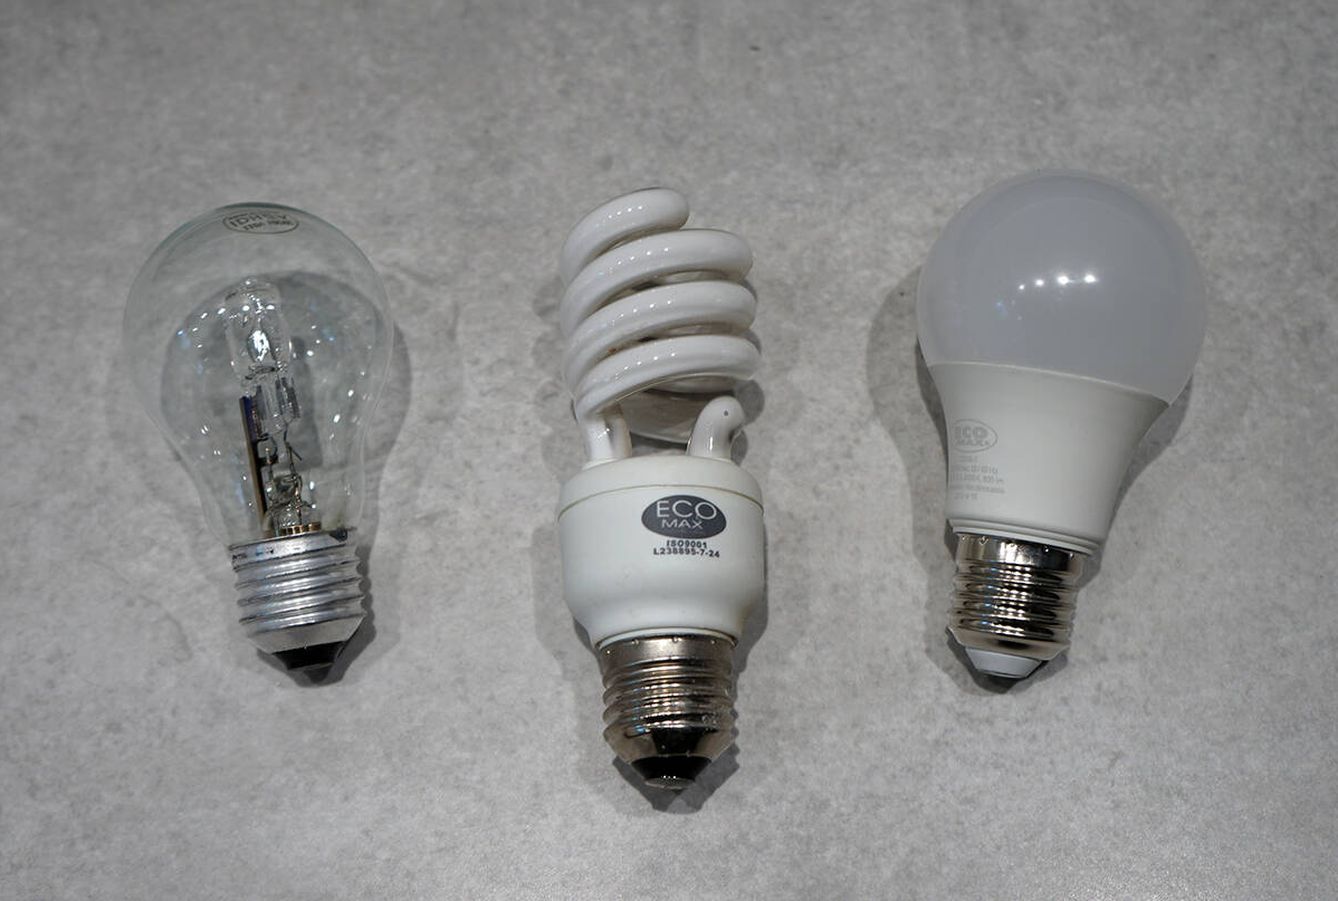 De izquierda a derecha, una bombilla incandescente, una bombilla CFL, y una bombilla LED.